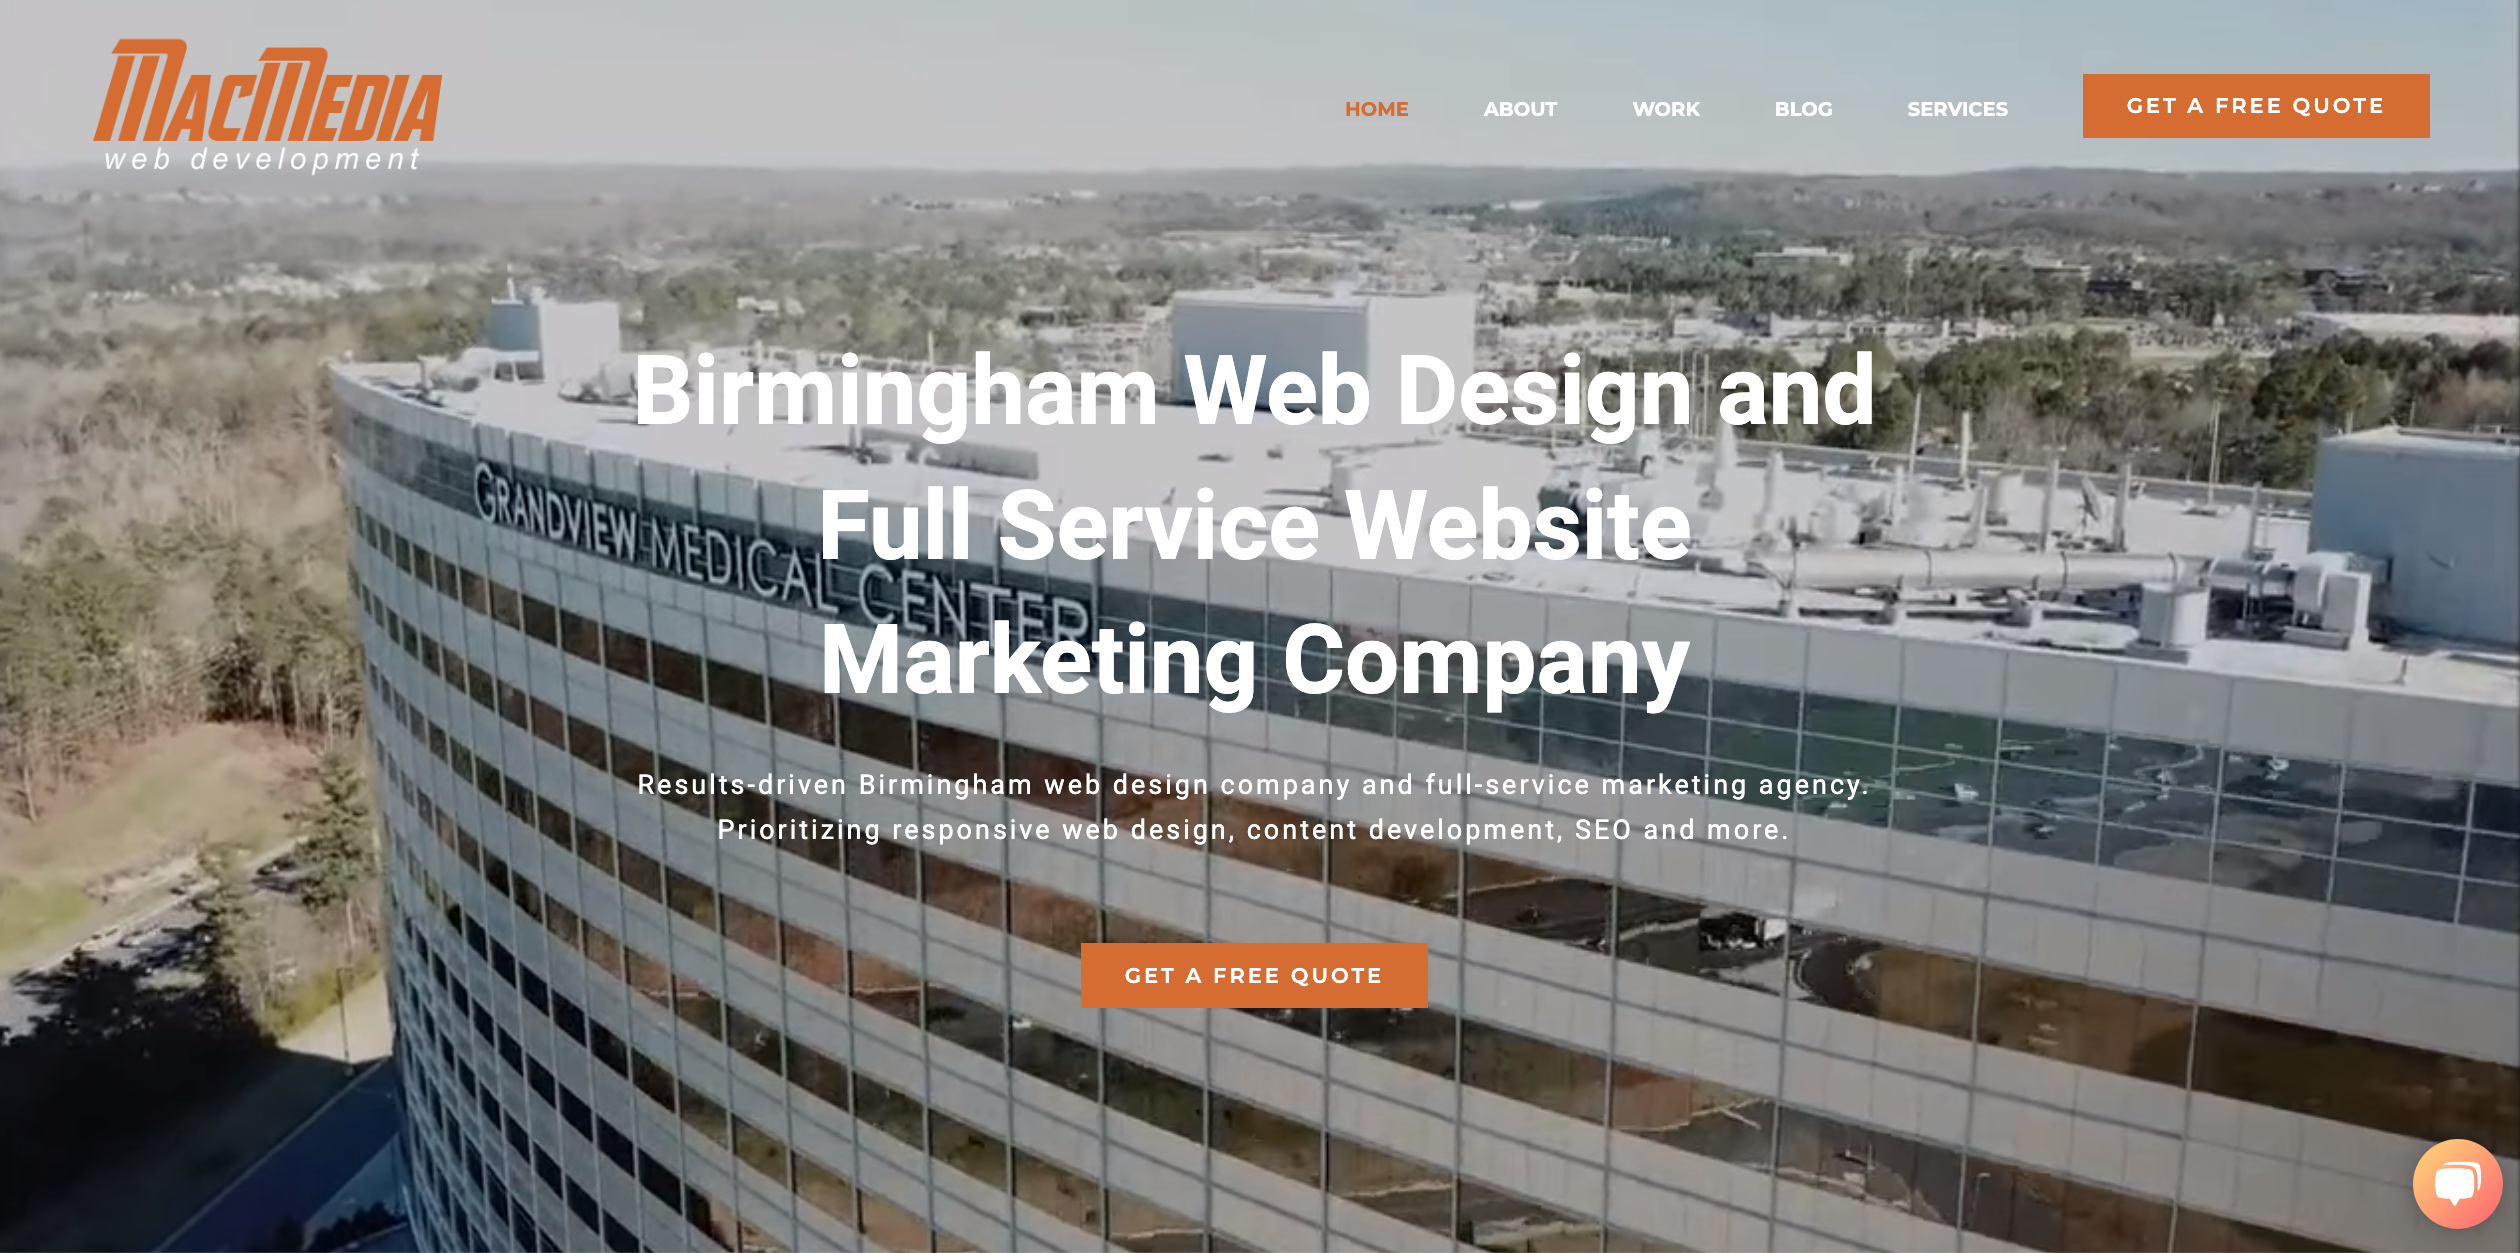 Birmingham Web Design